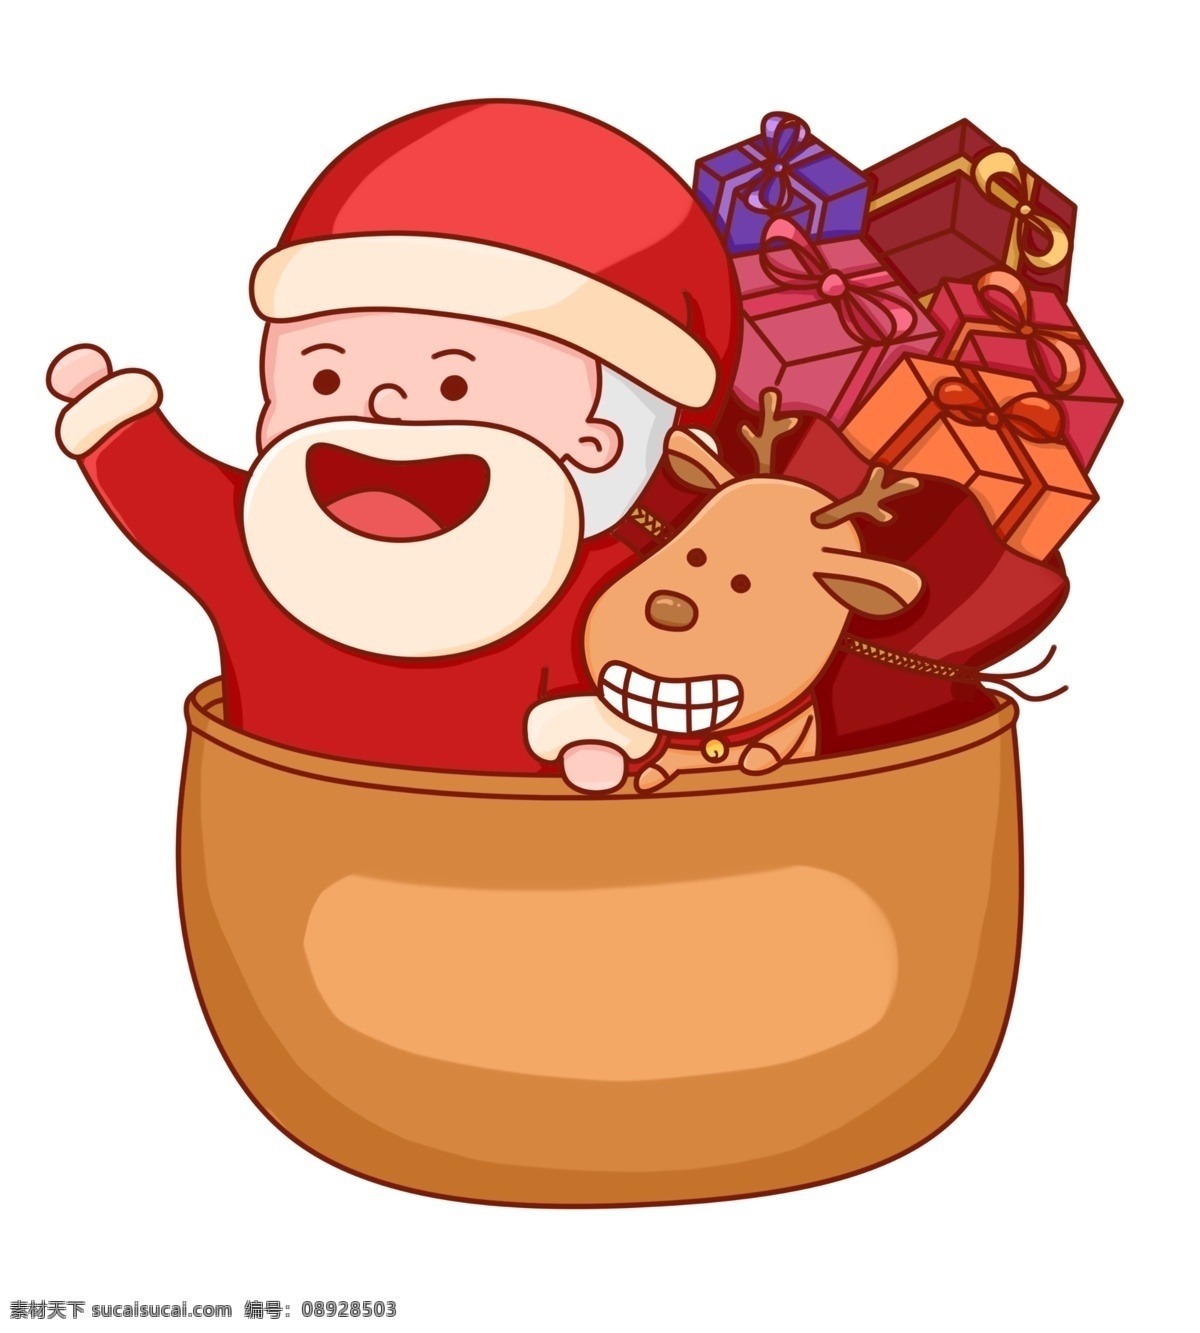 圣诞 圣诞节 夜 圣诞树 圣诞老人 卡通 可爱 红色 免 扣 圣诞夜 礼品 袋子 小鹿 热气球 卡通可爱 萌萌哒 免扣